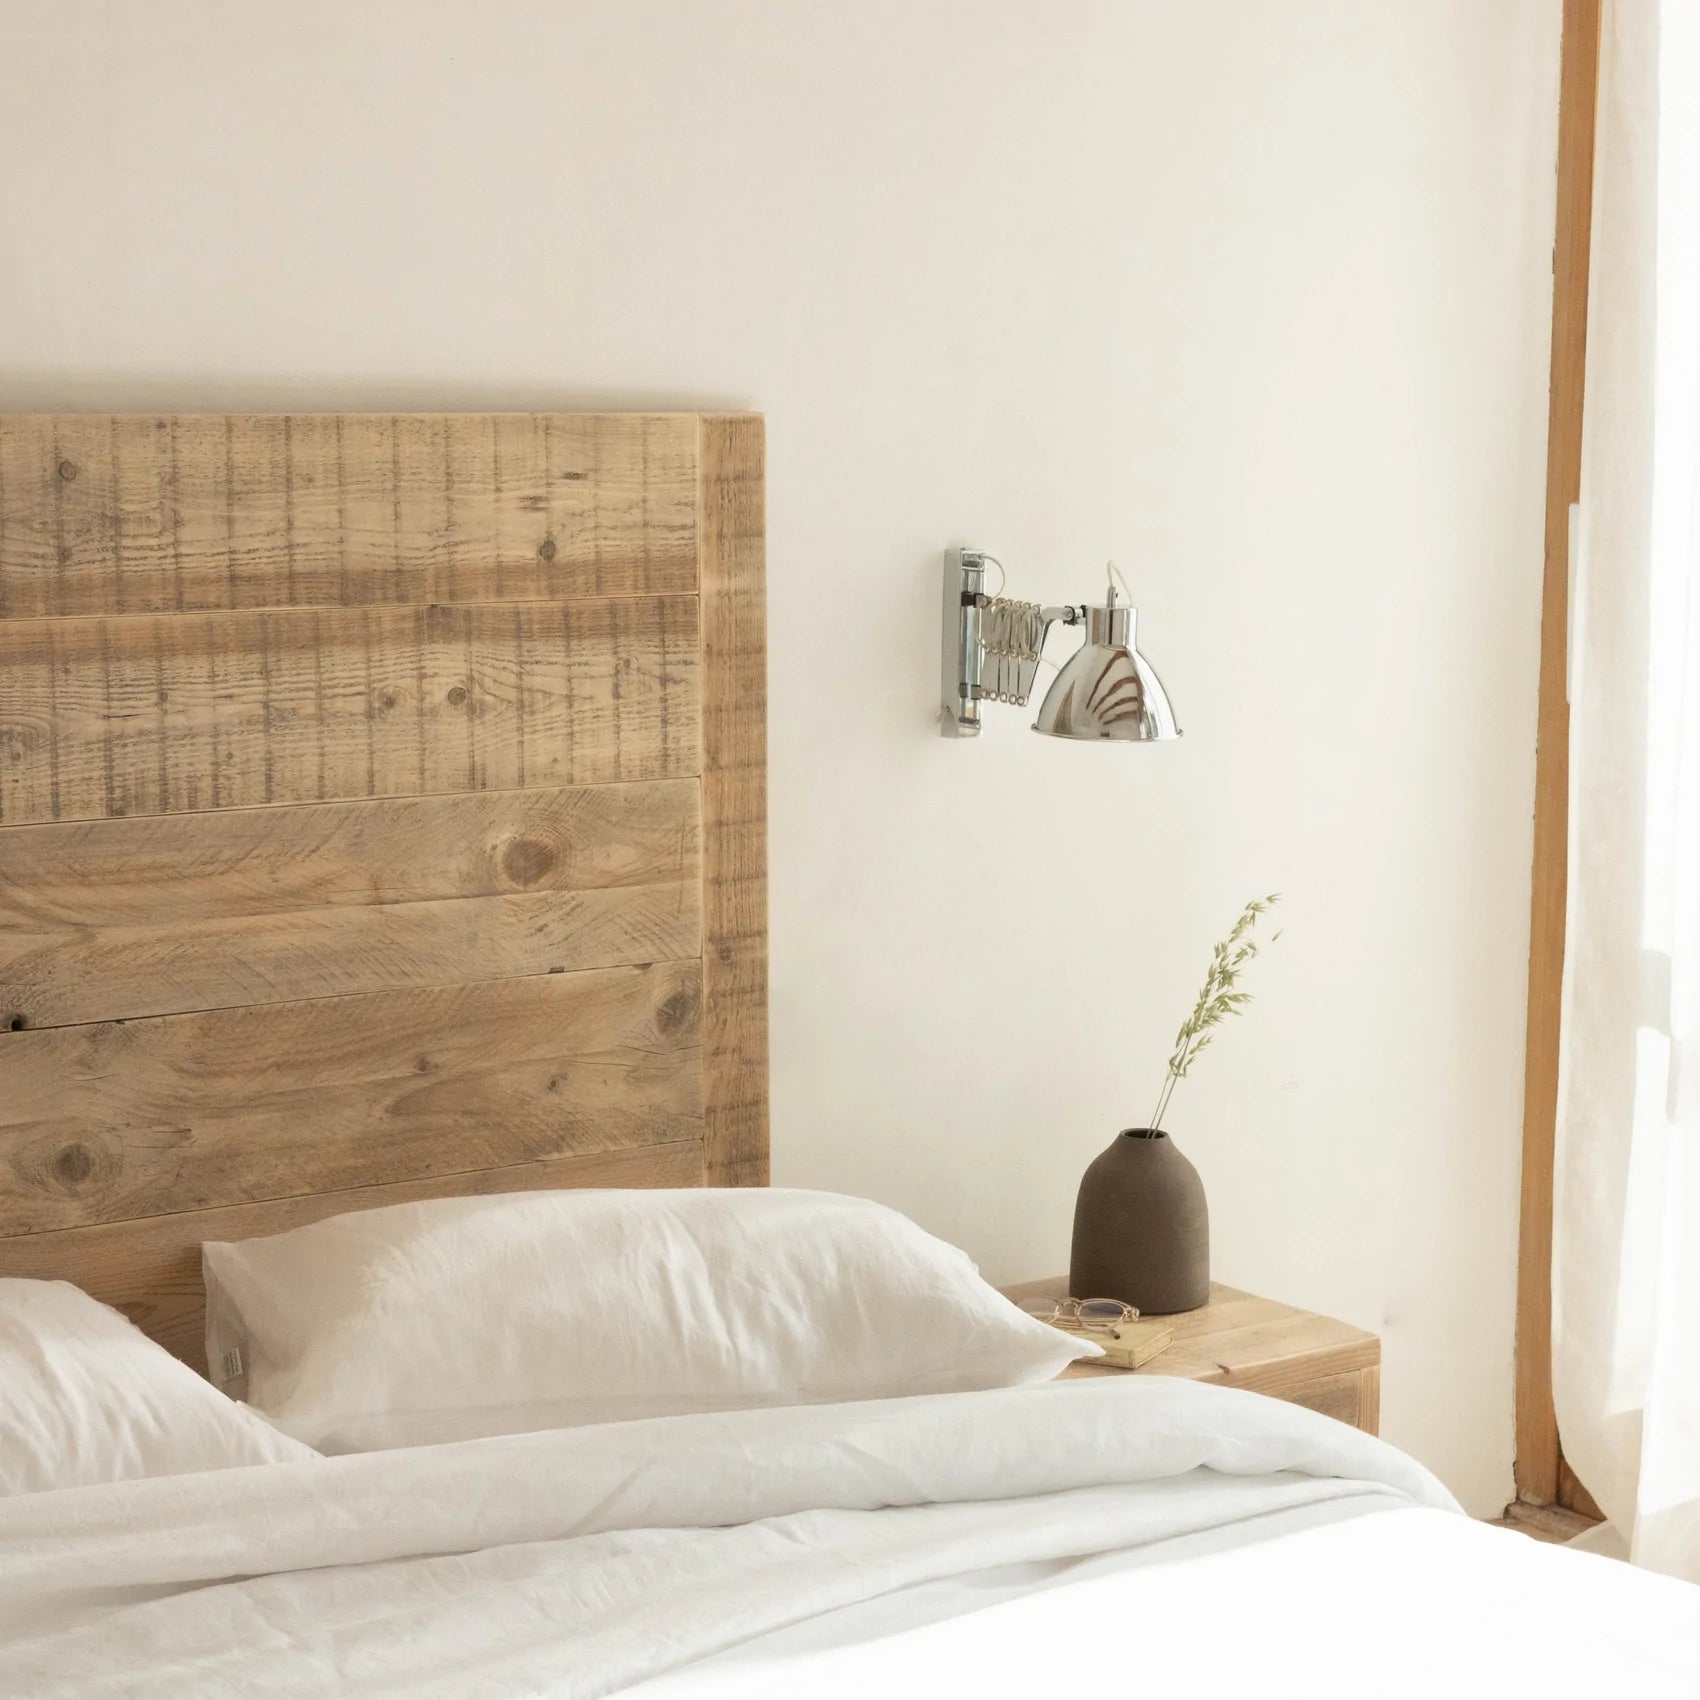 Cabeceros con mesita integrada, el truco El Mueble para dormitorios pequeños